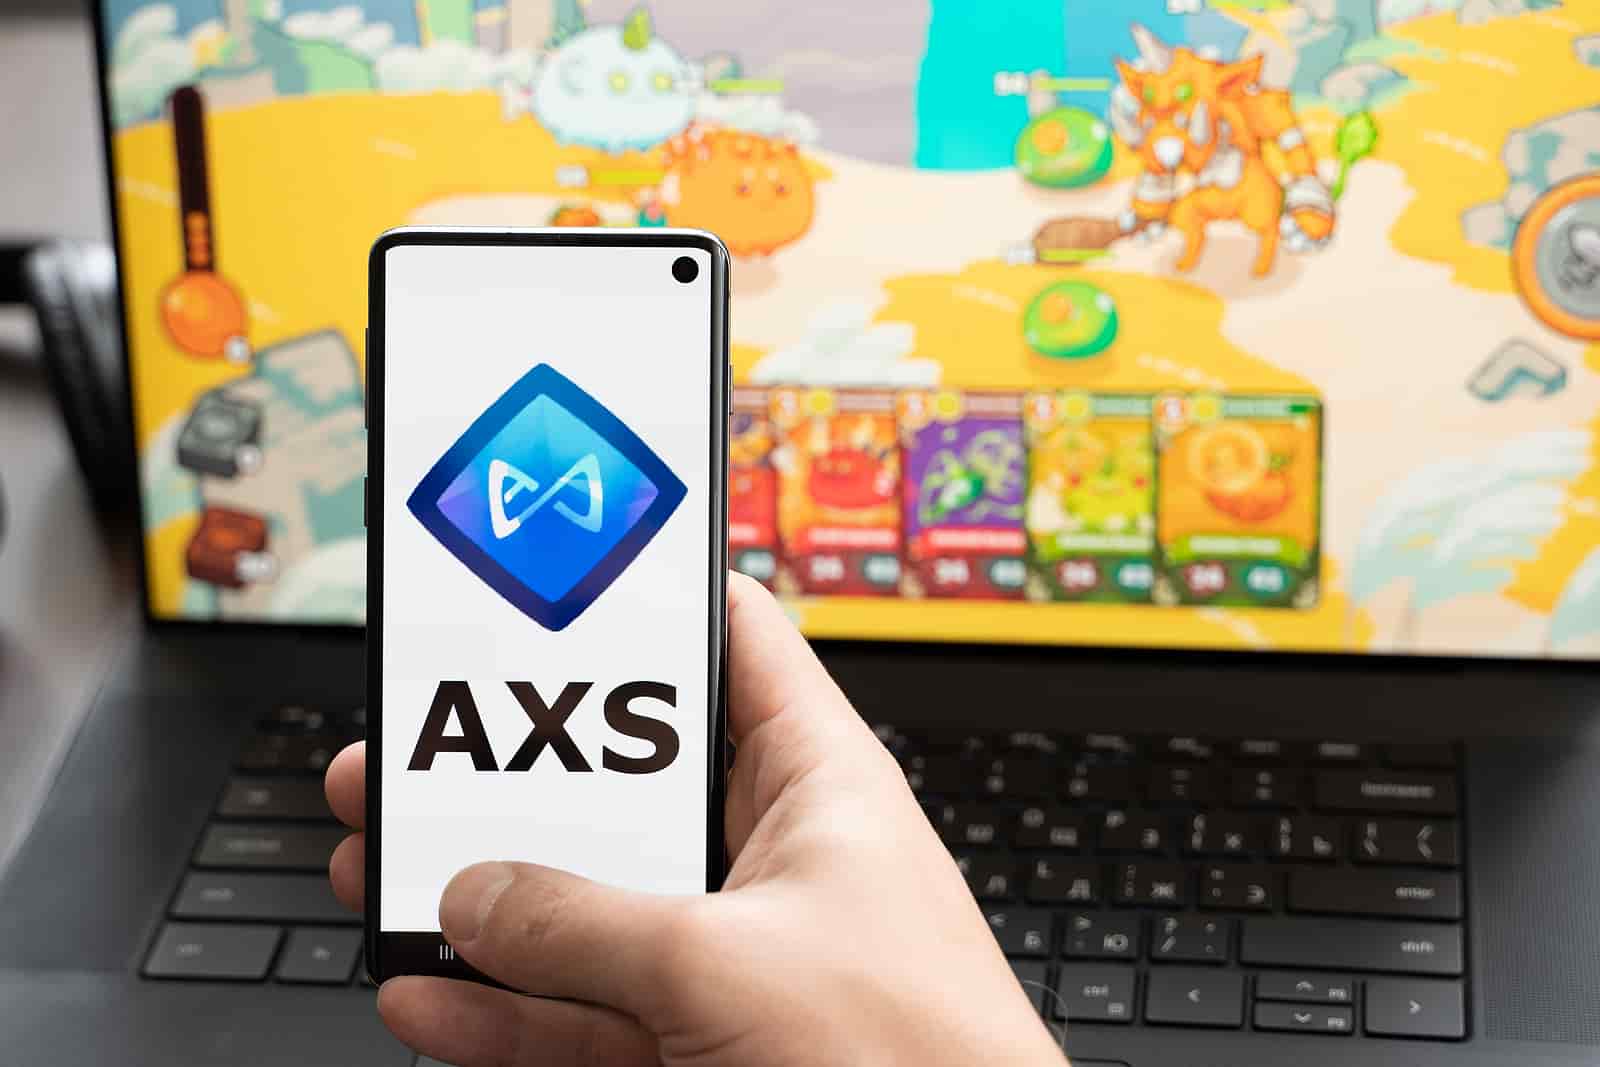 Axie Infinity: entenda o jogo criptoativo que ganhou a internet